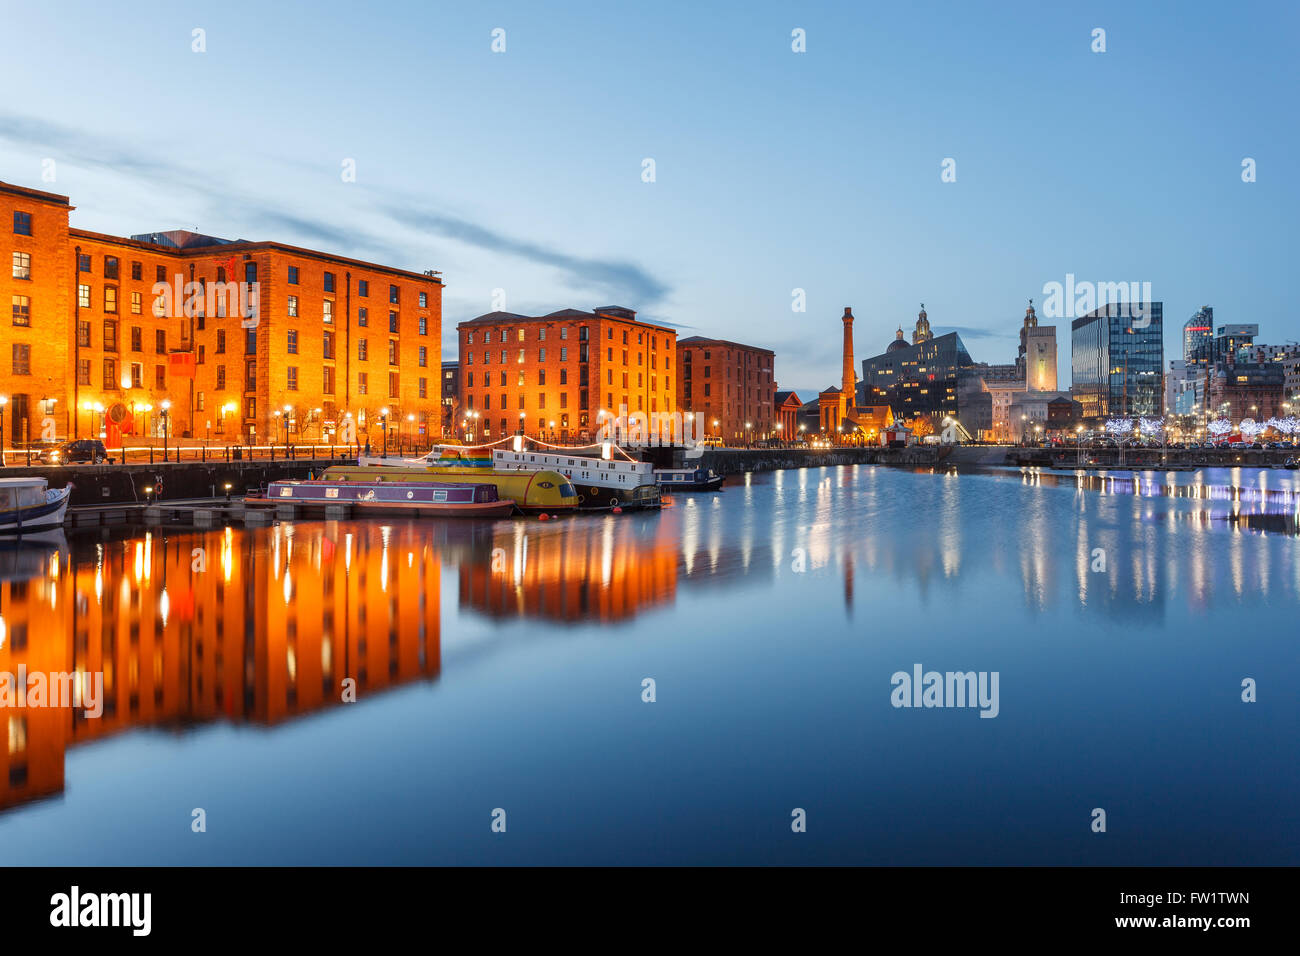 Reflexiones de edificios antiguos en el Albert Dock, Liverpool Waterfront, Reino Unido. Foto de stock